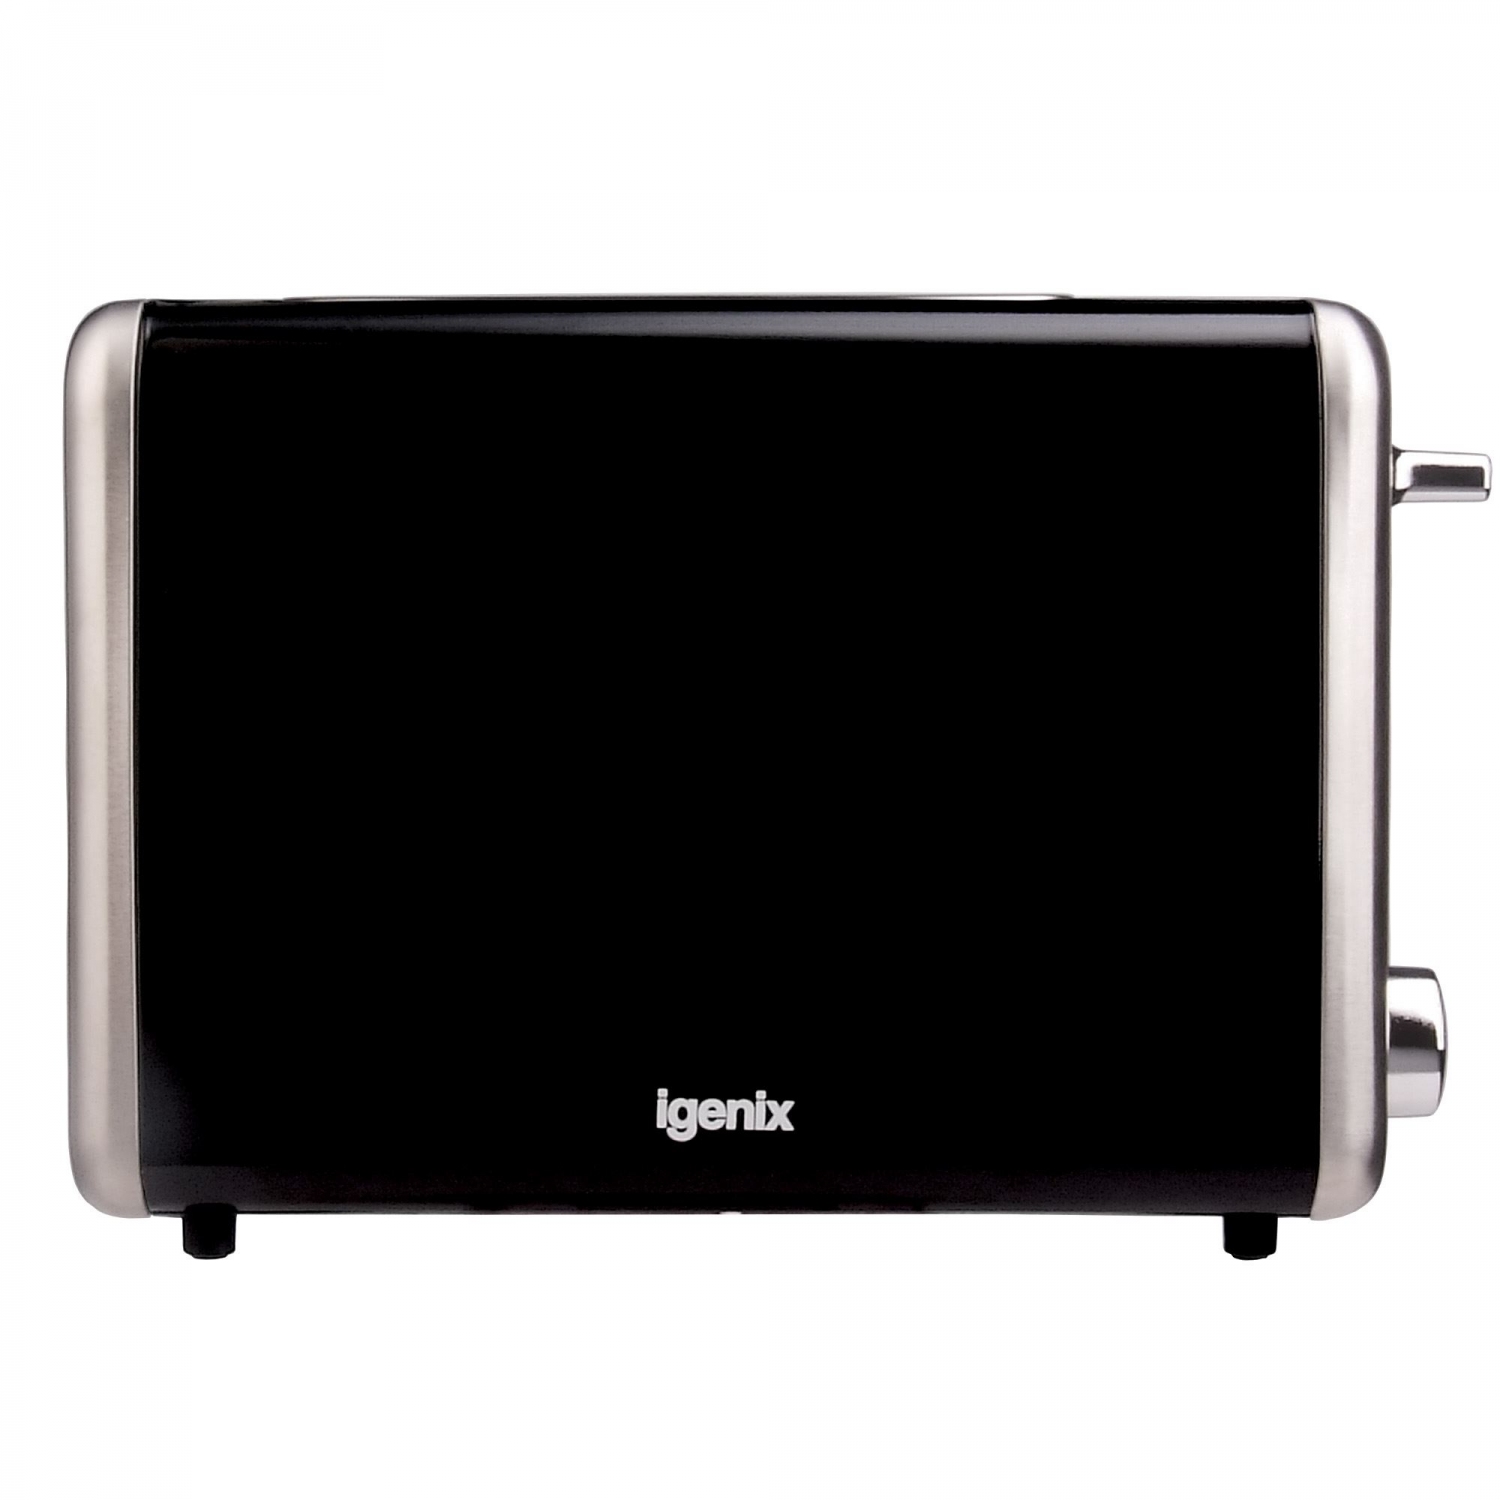 Igenix 2 Slice Toaster - Black/Stainless Steel - 1